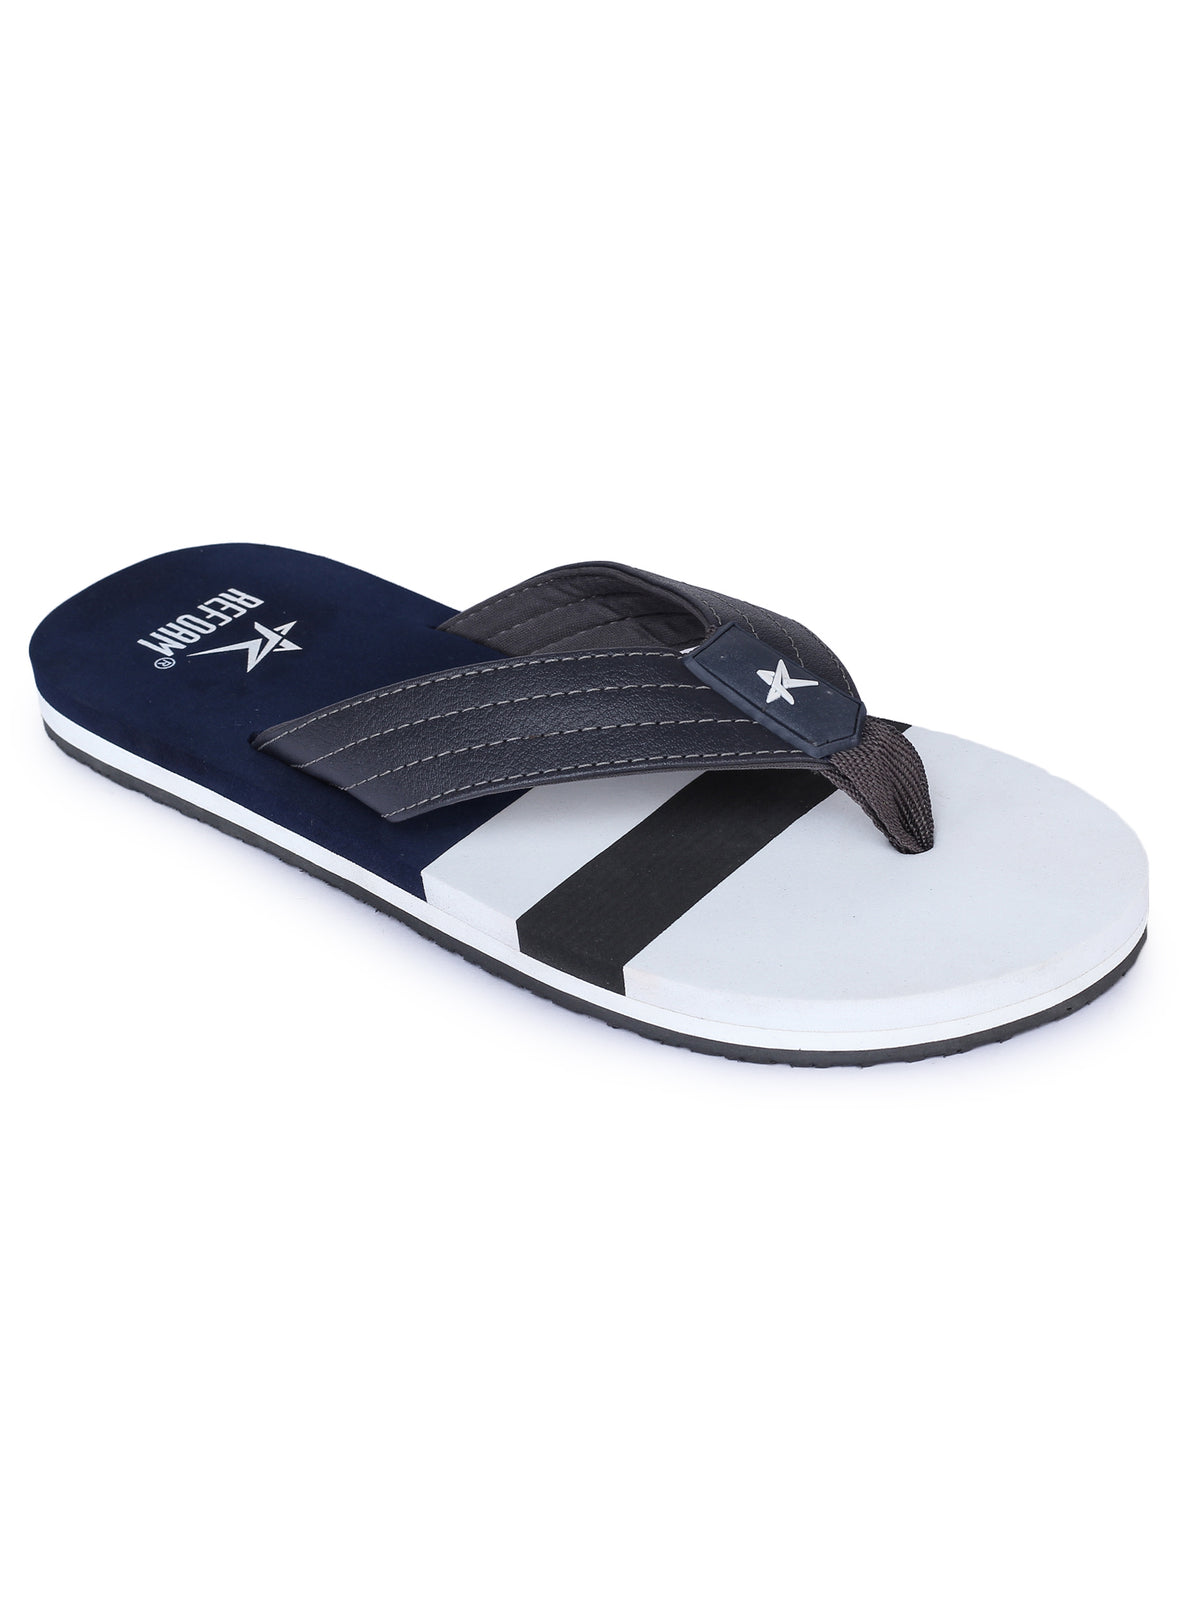 REFOAM White & Blue Rubber Slip On Casual Slippers/Flip-Flops For Men –  Refoam